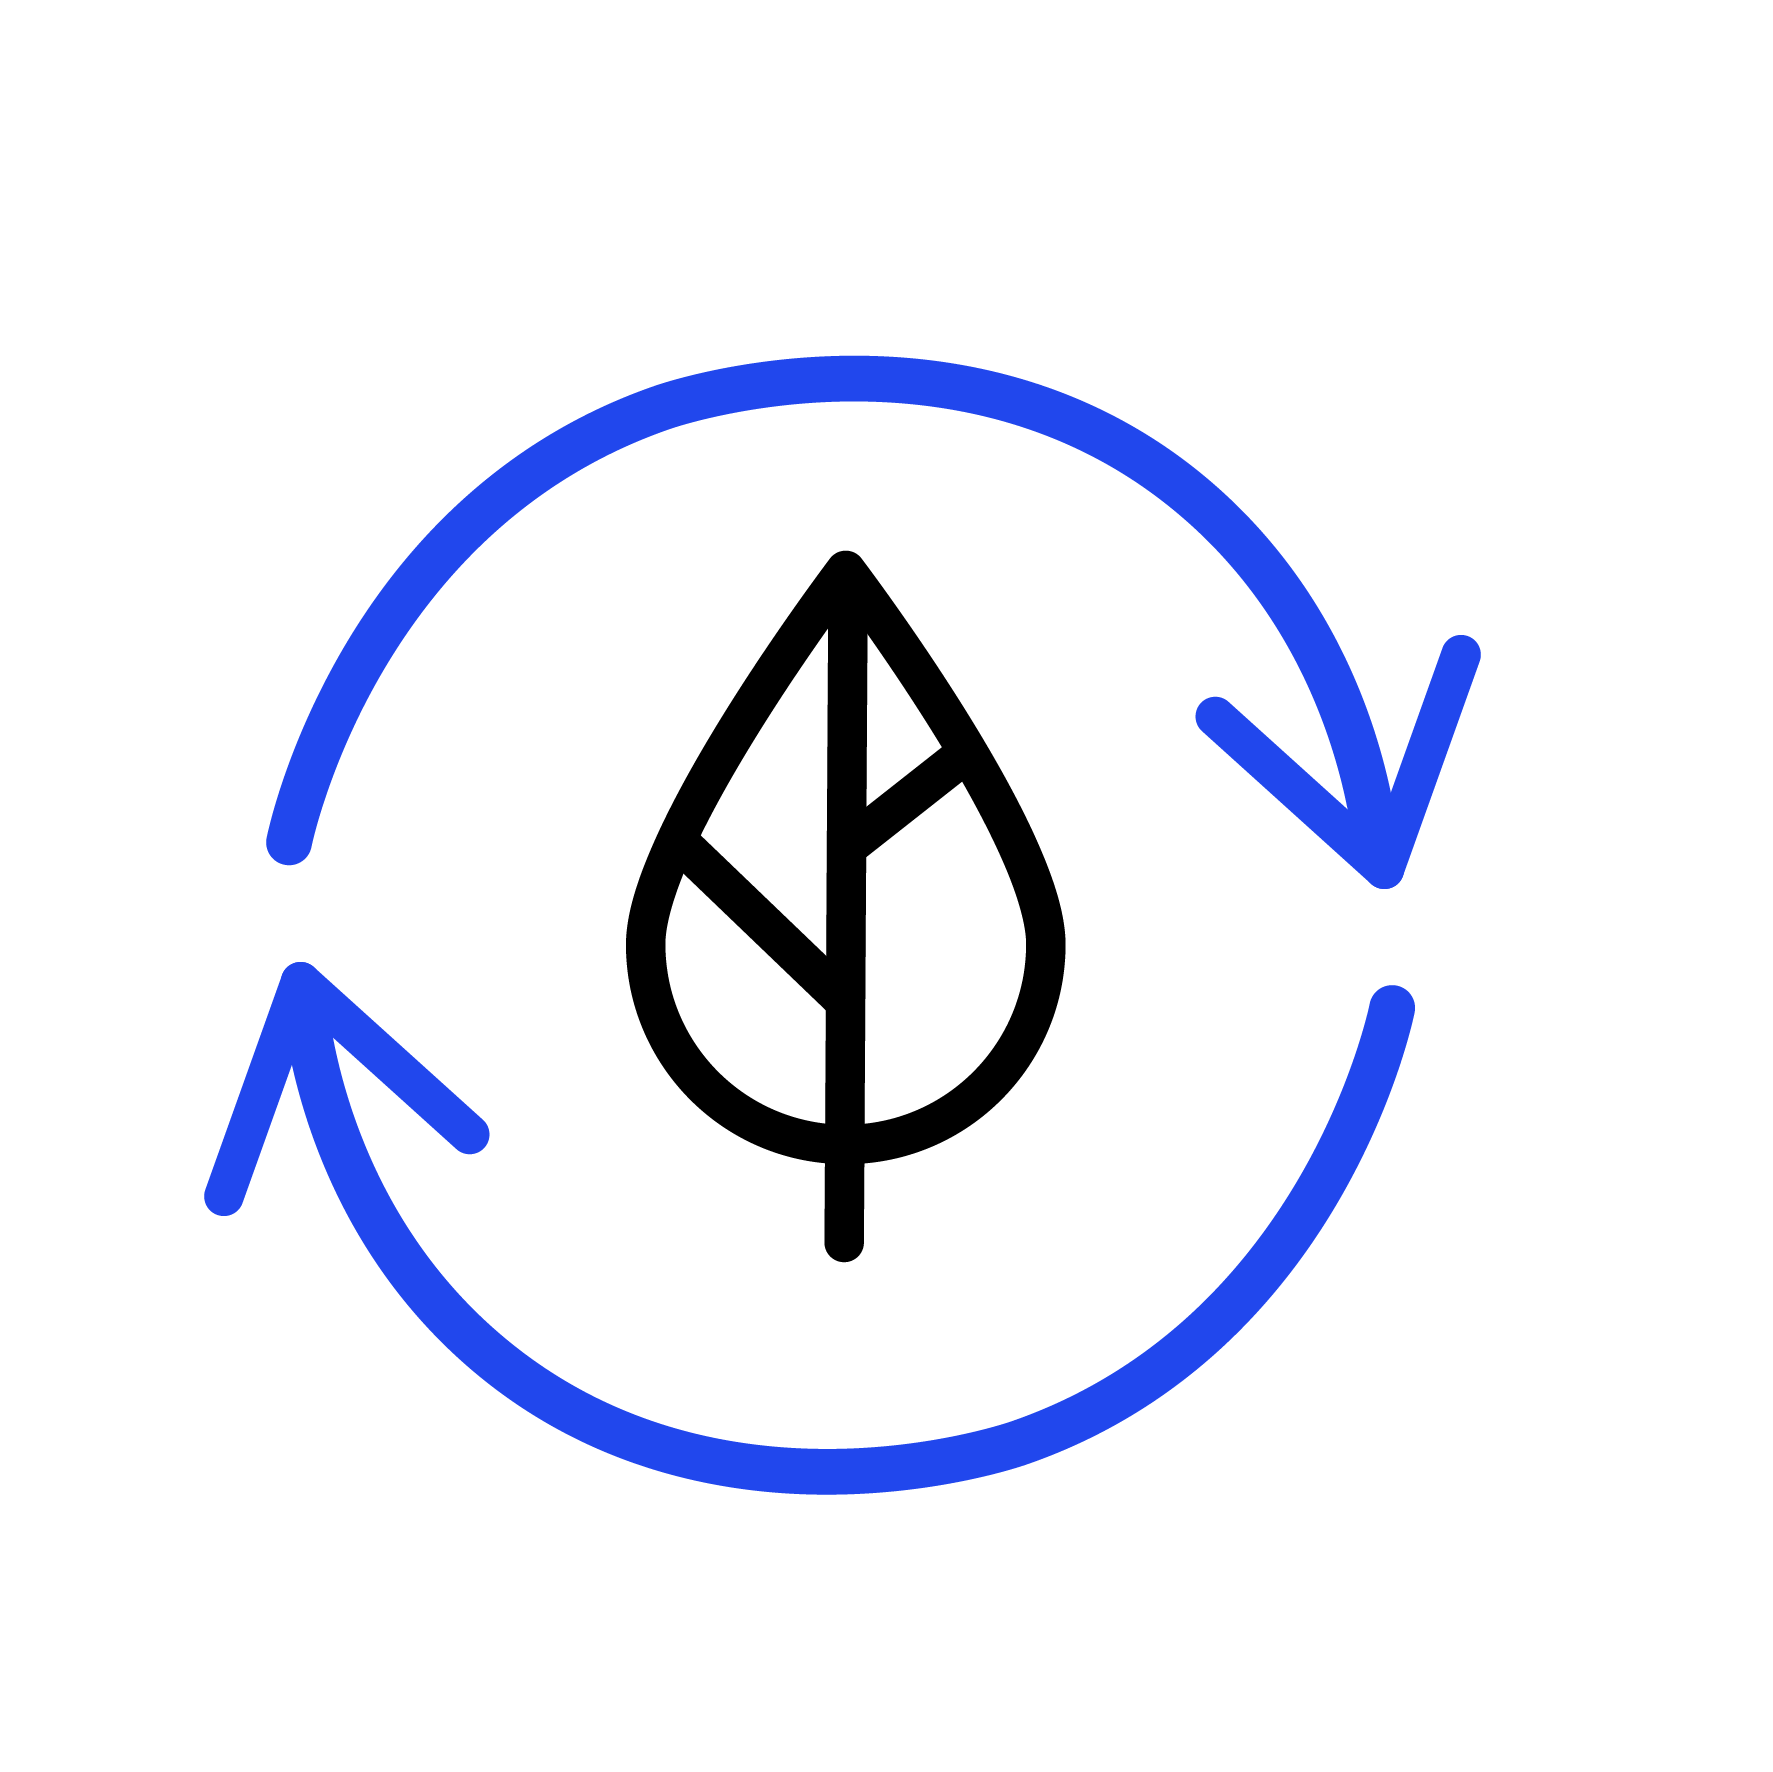 Circular process